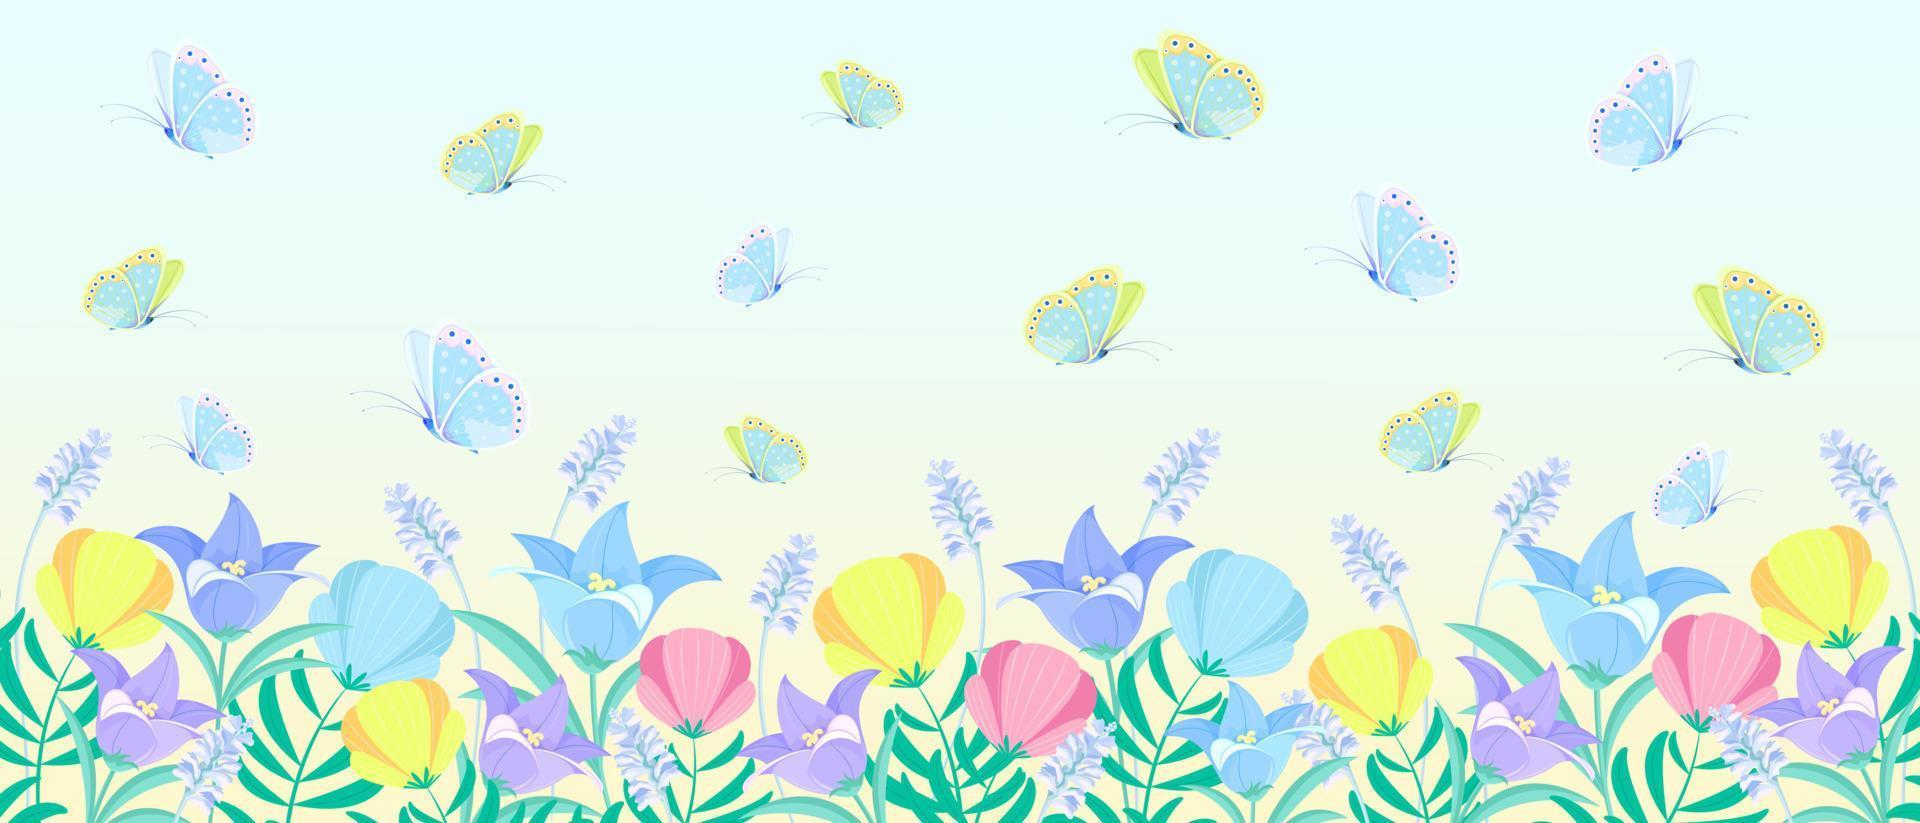 Vektorblumenmuster mit hellen Wildblumen und fliegenden Schmetterlingen. auf einem weichen blauen Hintergrund mit einem Farbverlauf. horizontale Panoramadarstellung. Blumenhintergrund in einem fabelhaften Stil vektor